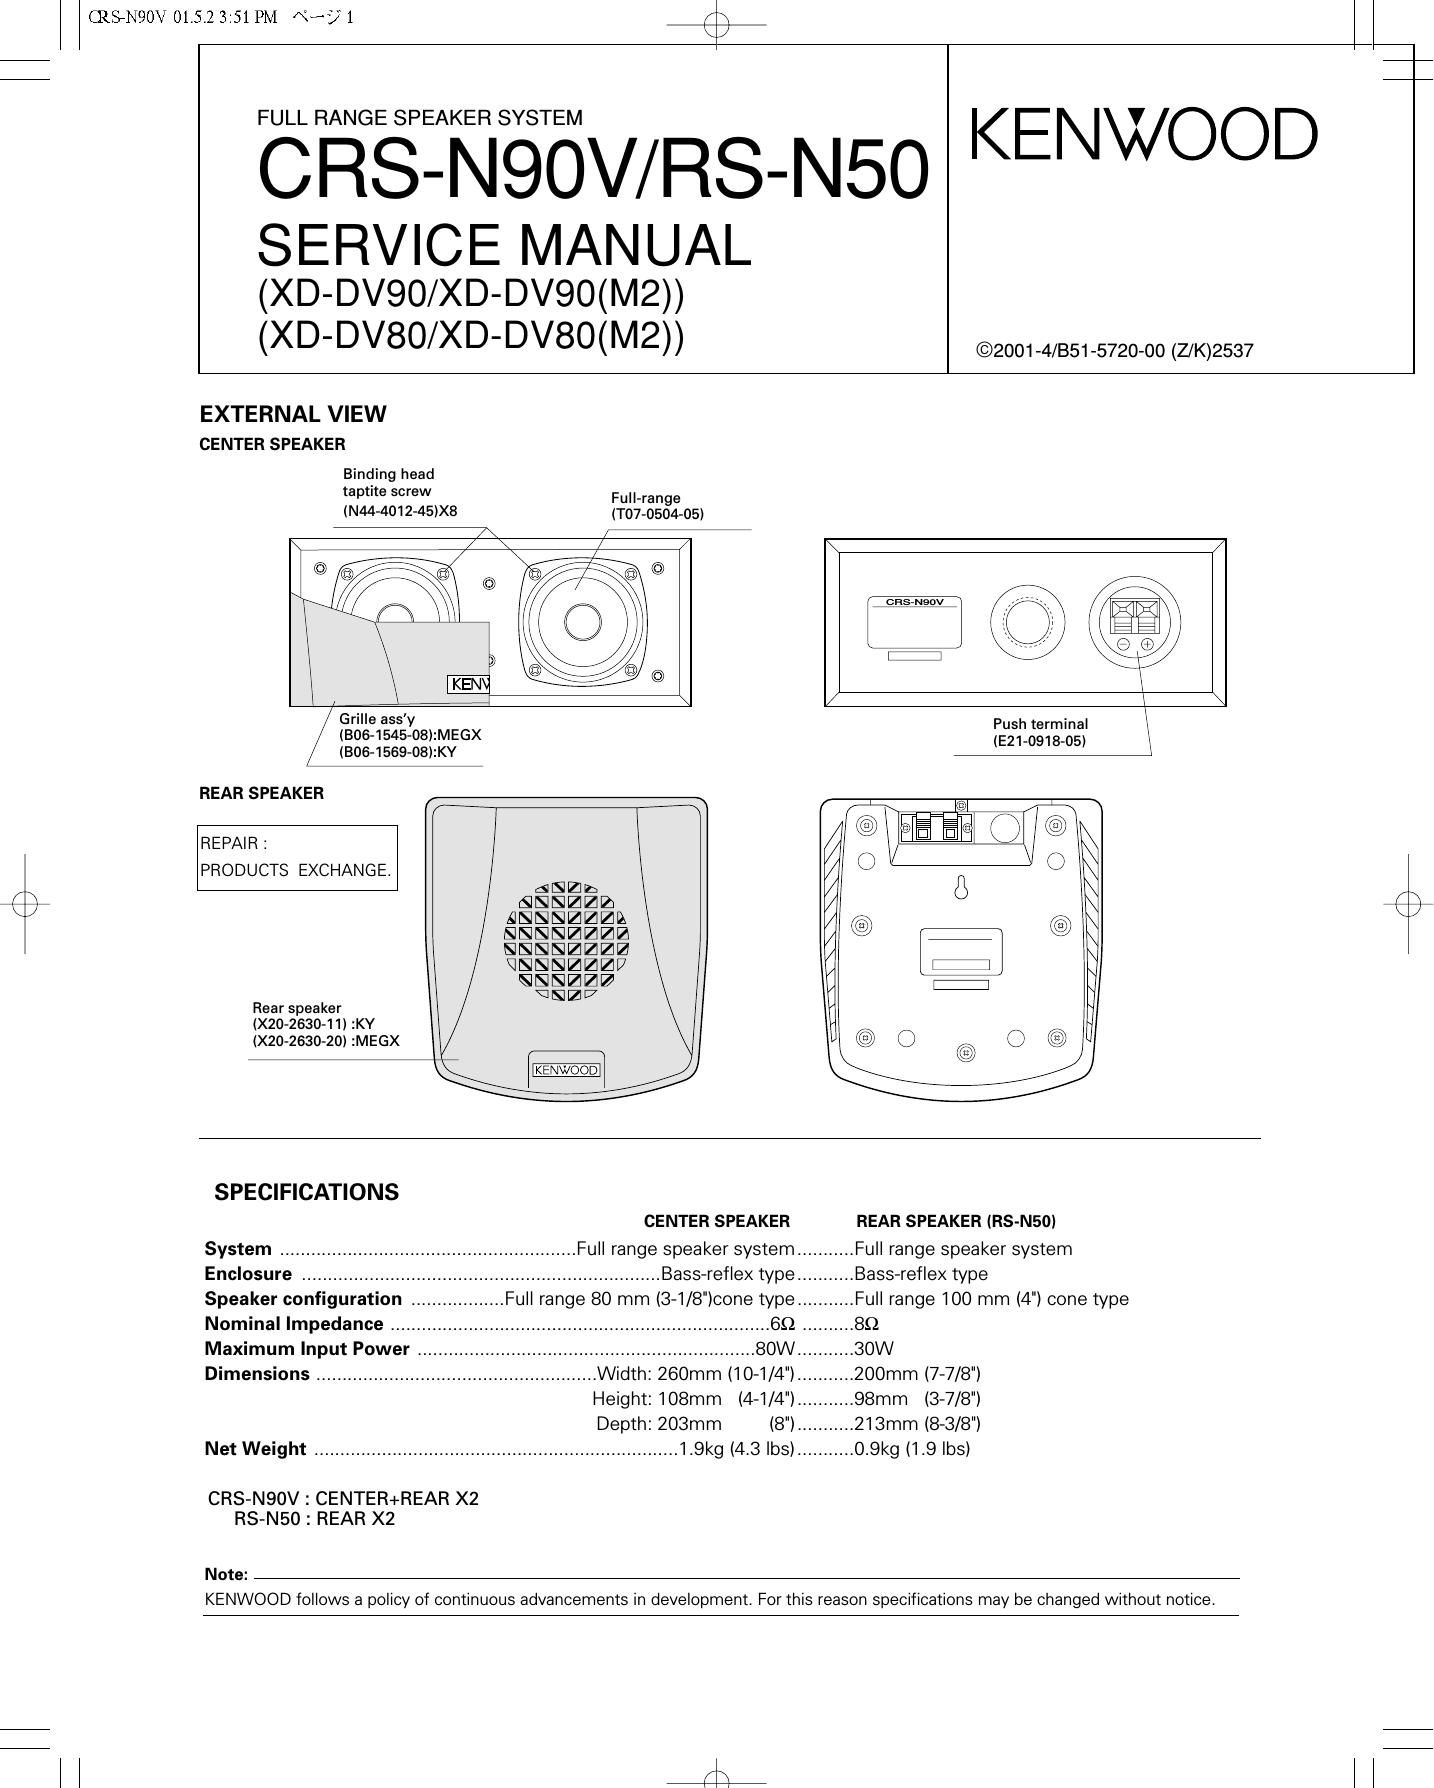 Kenwood CRS N90 V Service Manual